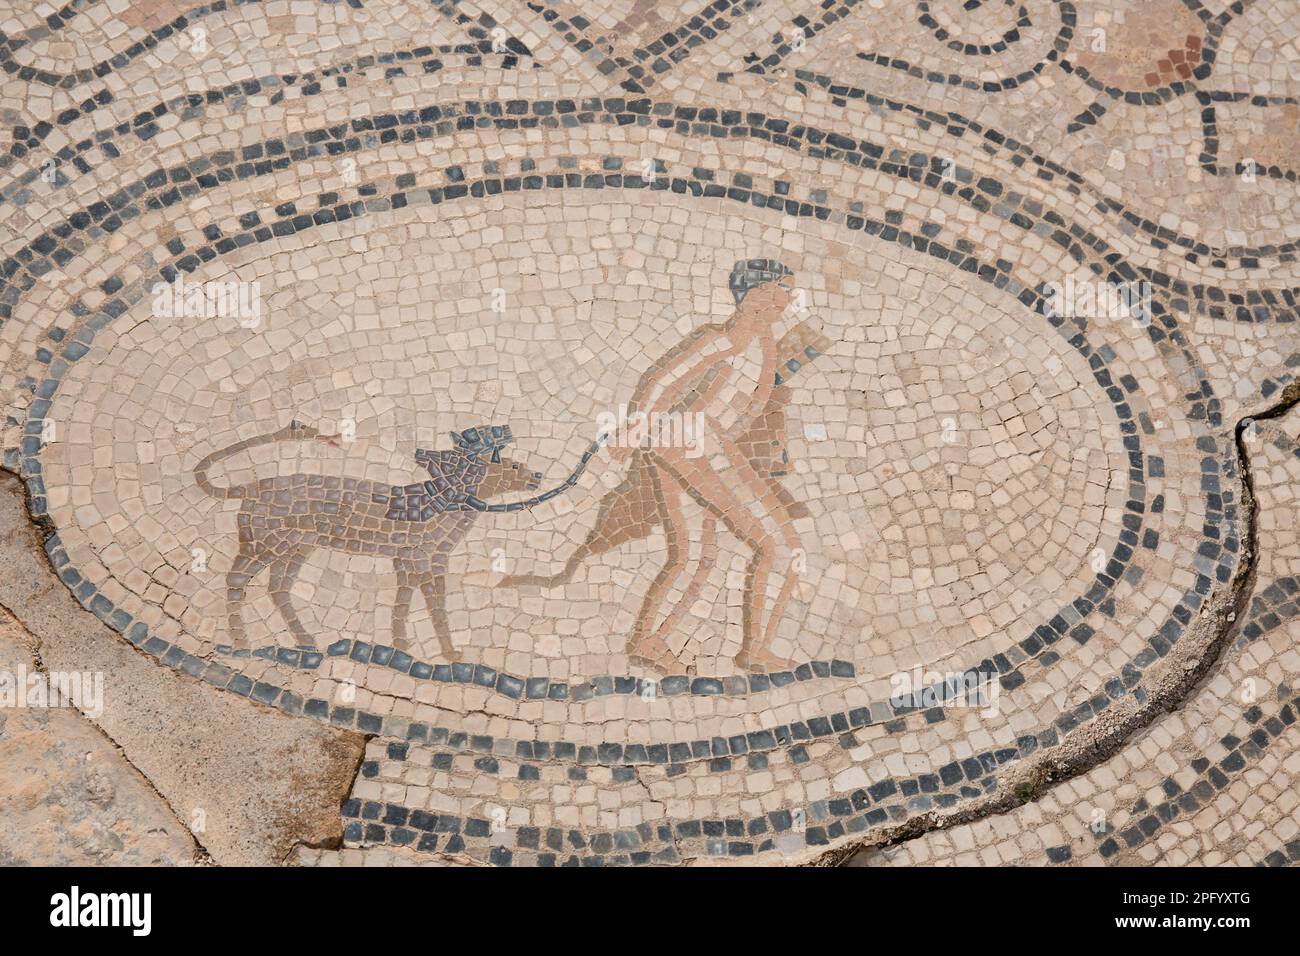 Mosaïque d'Hercules marchant dans la taureau crétois à Volubilis Maroc Banque D'Images